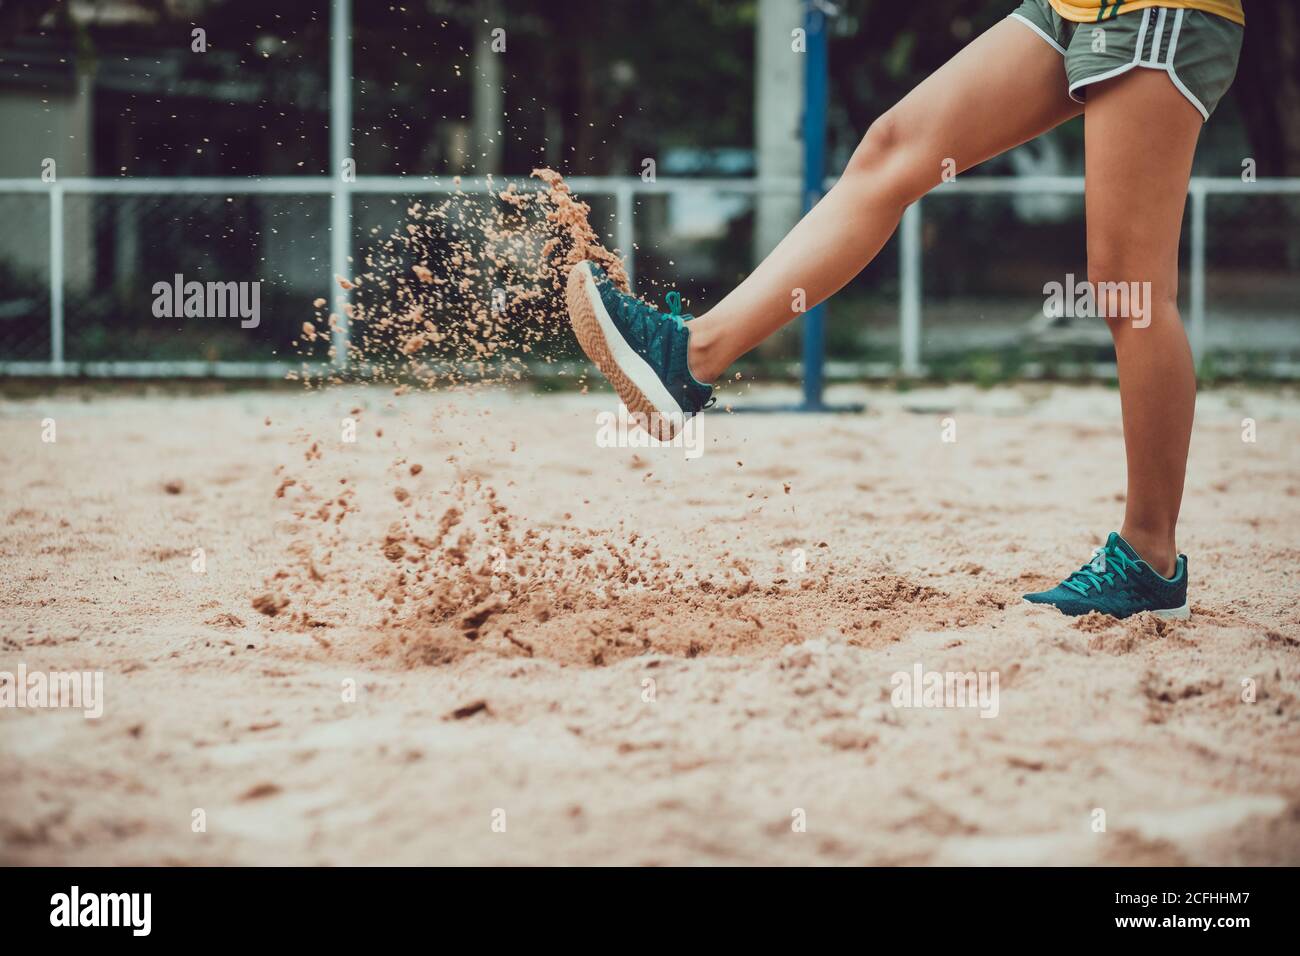 las mujeres del deporte de la pierna patean arena porque fallan la competencia. Foto de stock